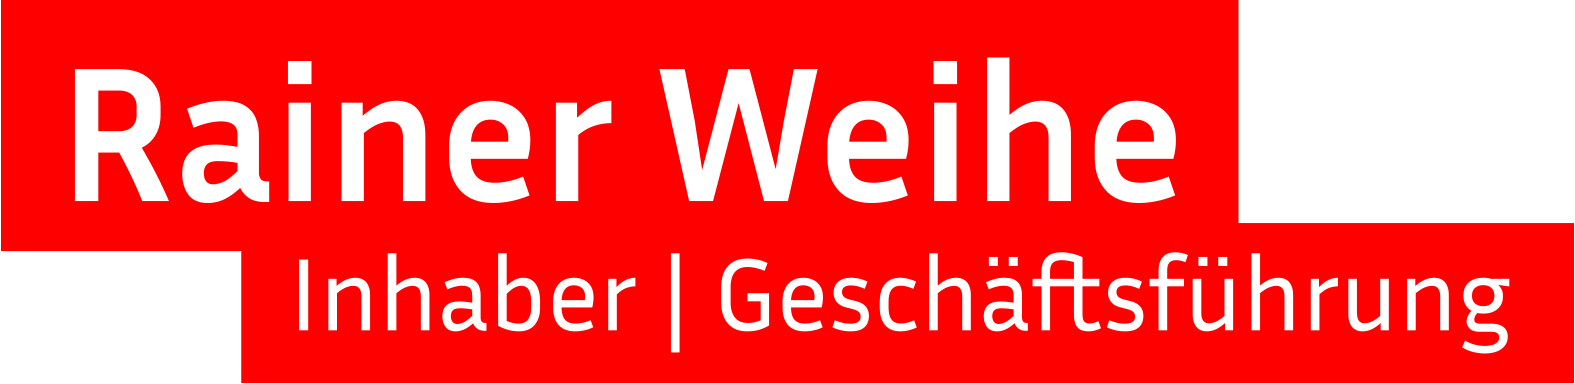 Rainer Weihe Inhaber | Geschäftsführung